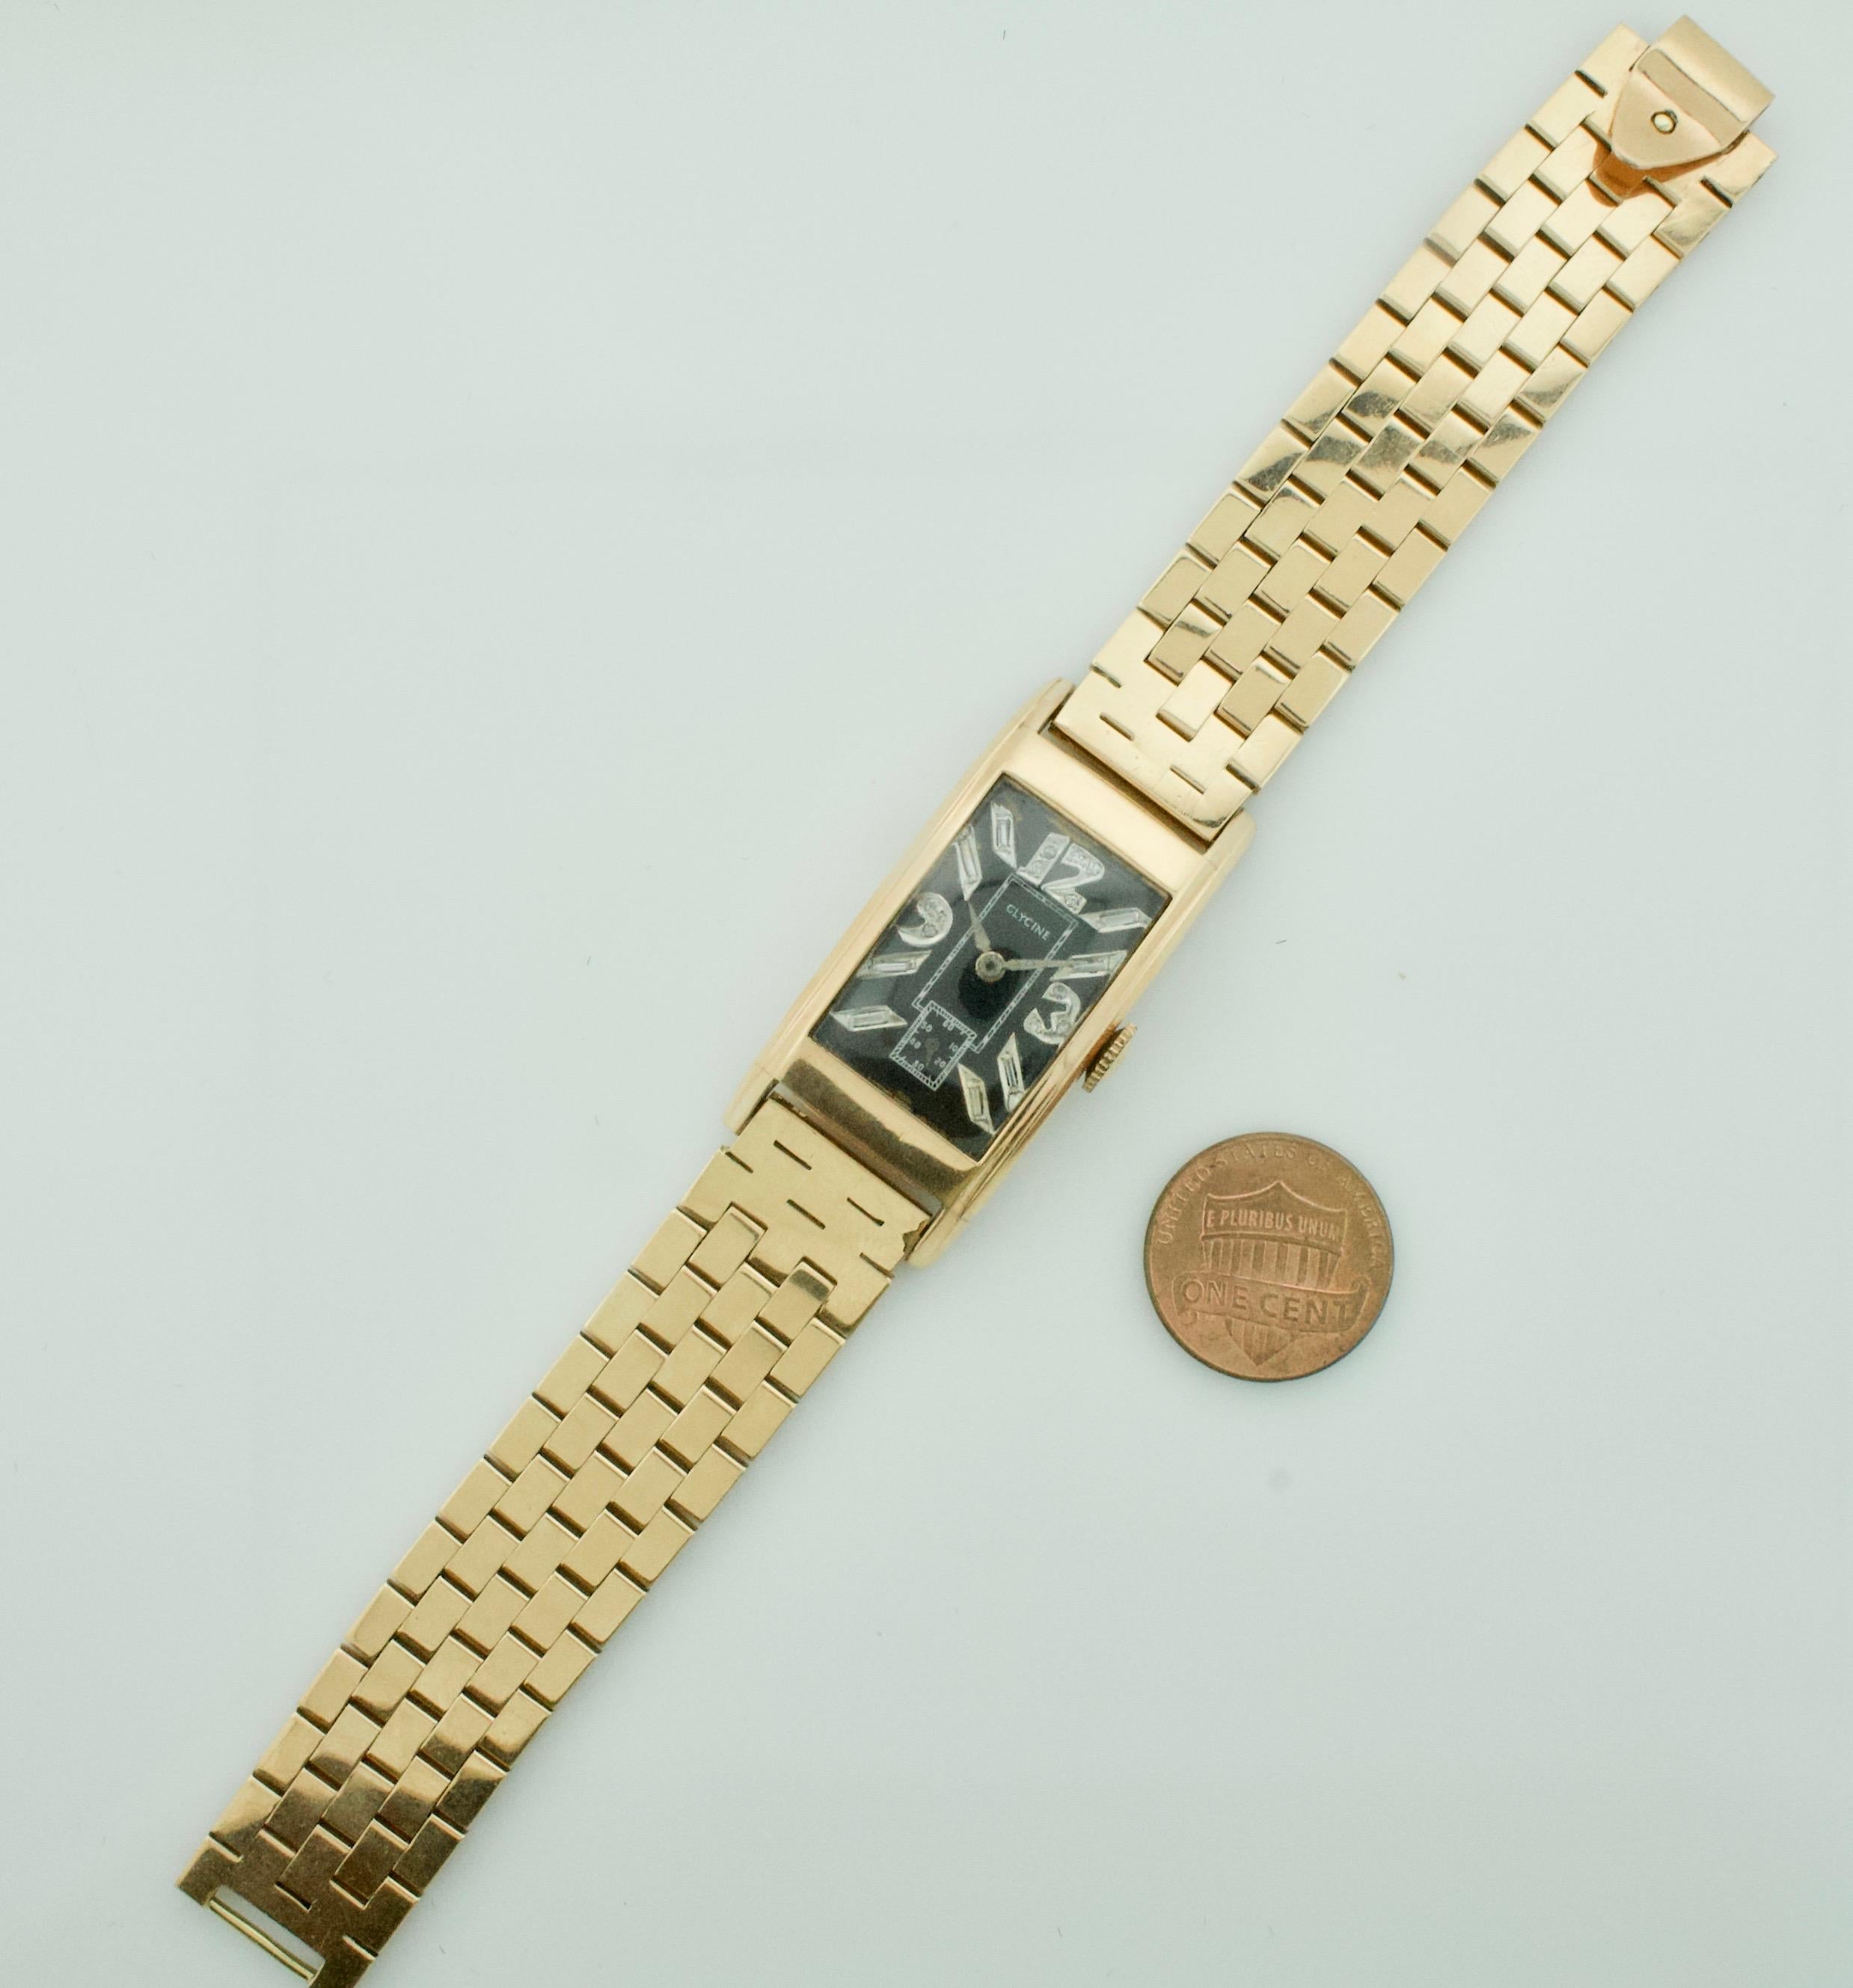 Rose Gold Diamond Watch von Glycine Circa 1940's
Glycine wurde 1914 in Biel (Schweiz) gegründet und hat im Laufe der Jahre eine ausgewählte Linie von Zeitmessern beibehalten, die auf dem starken Fundament der Marke basieren und ihre Zeit